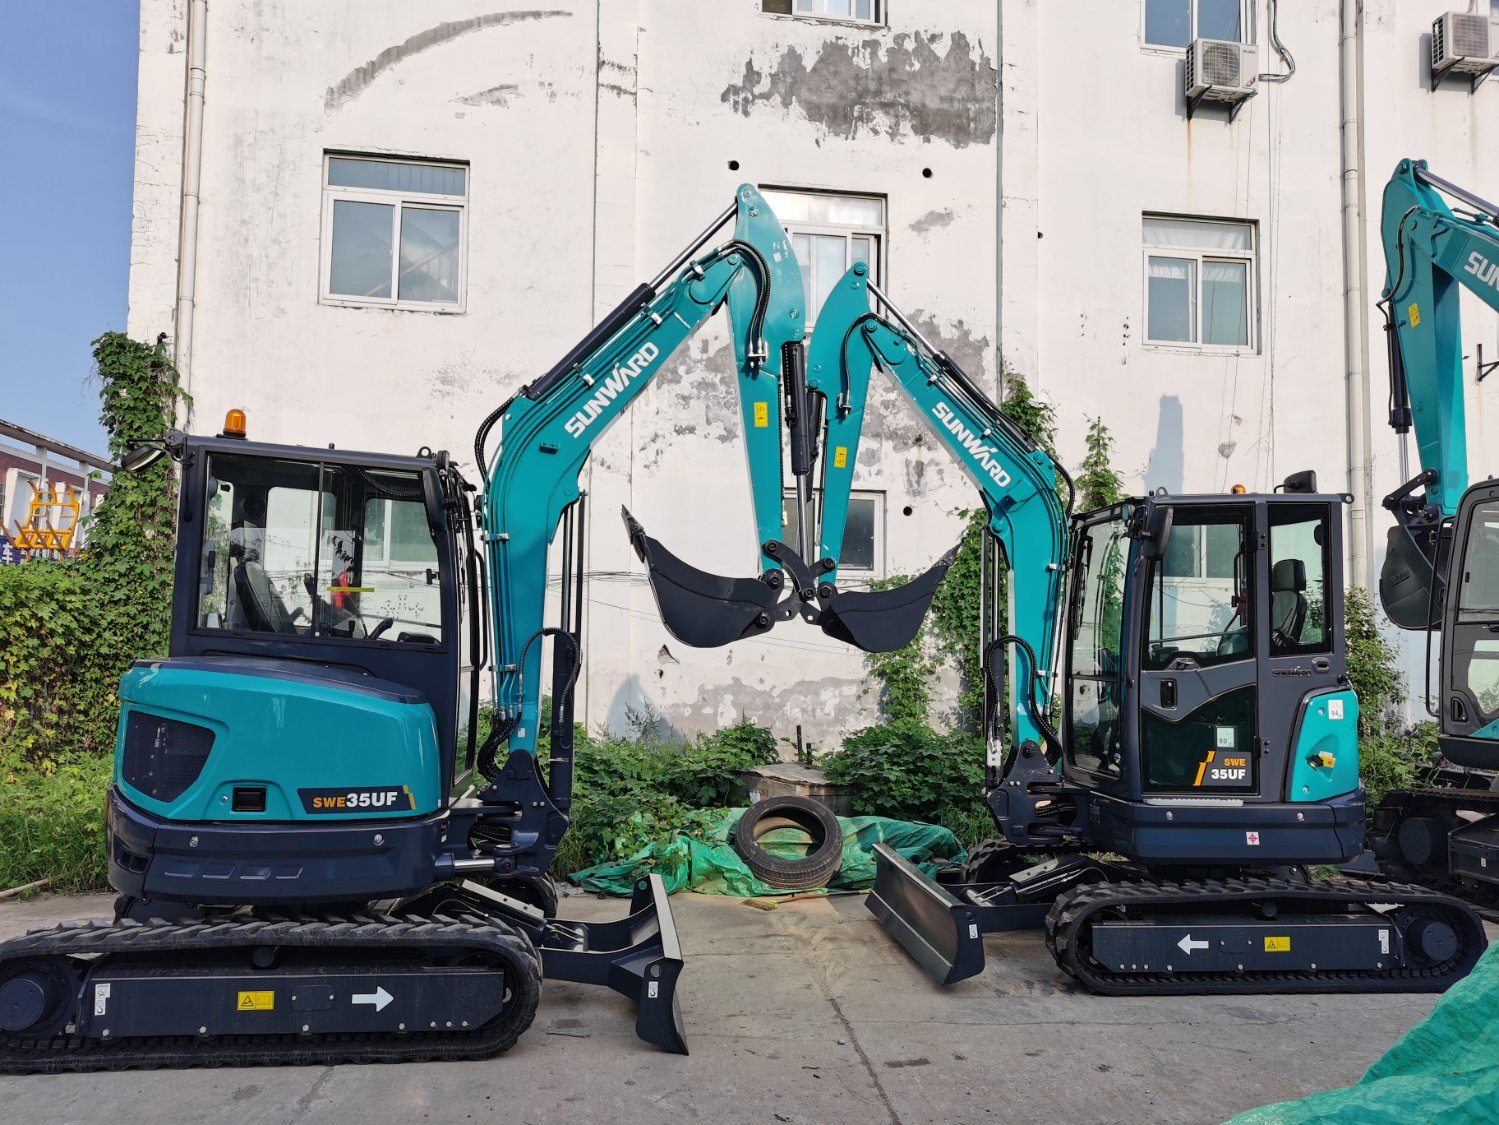 
                Estado de Nueva maquinaria de movimiento de tierras 3.5 ton Swe35UF excavadora de cadenas
            